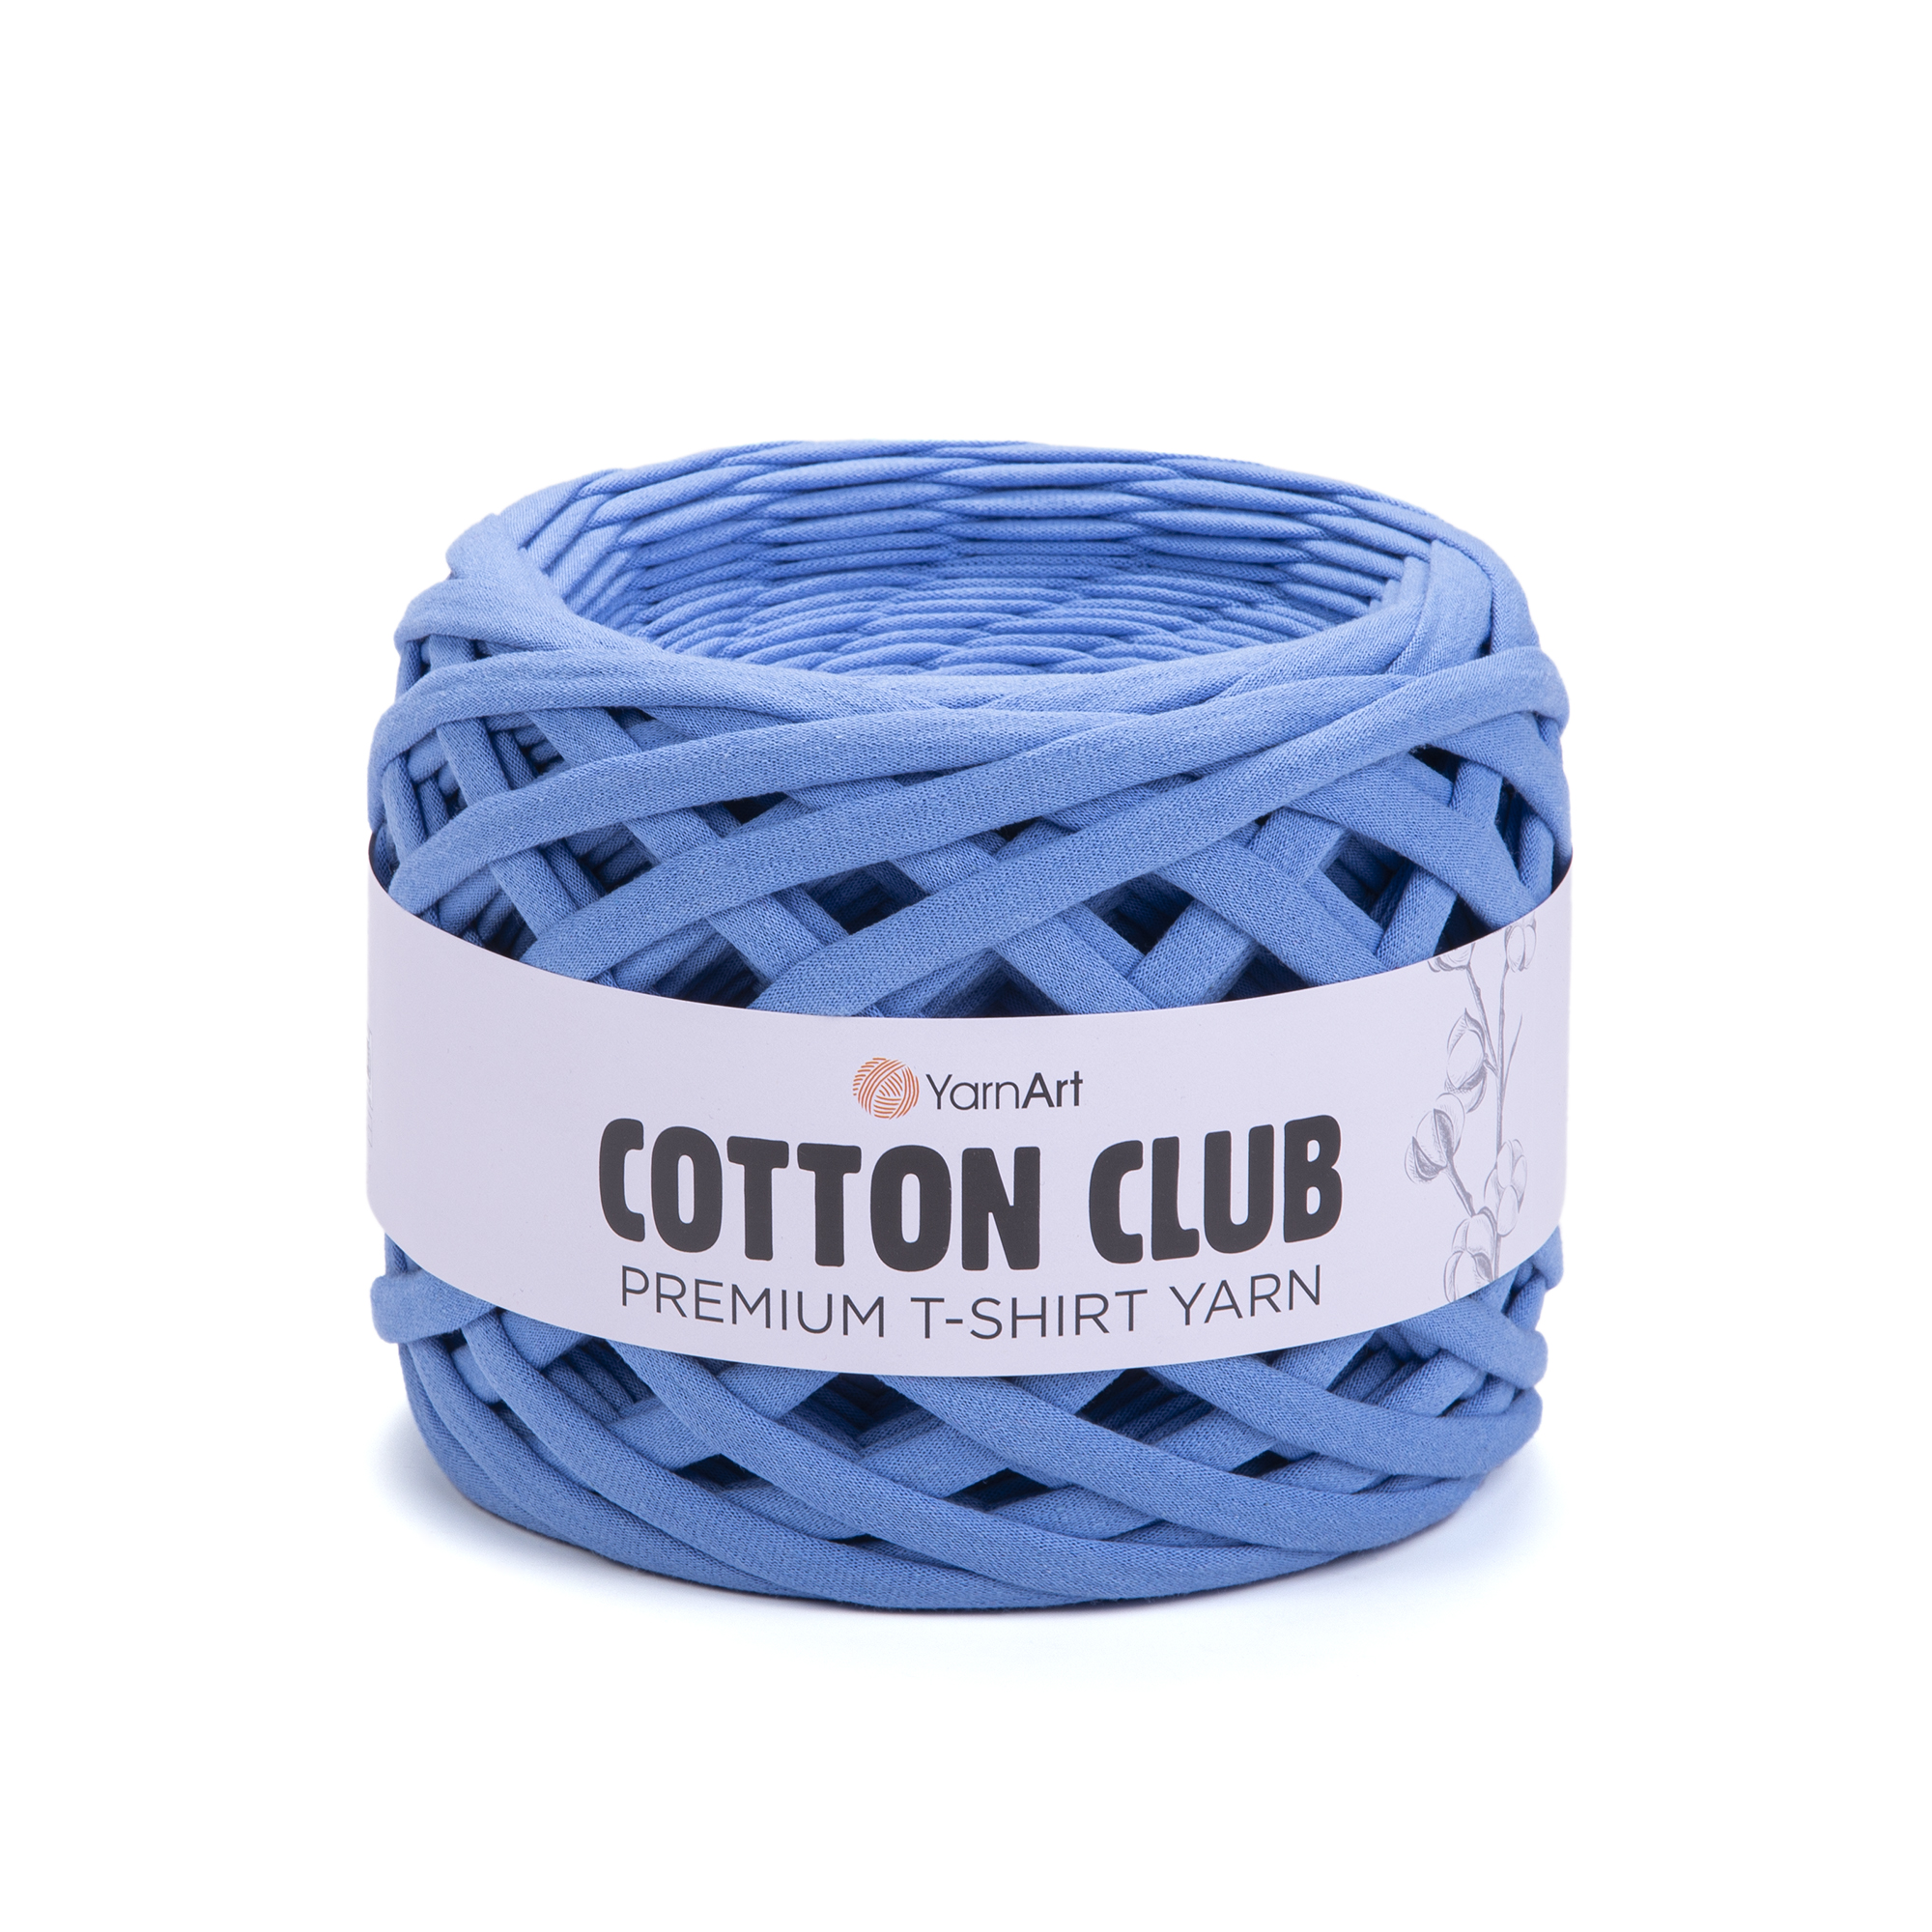 YarnArt Cotton Club